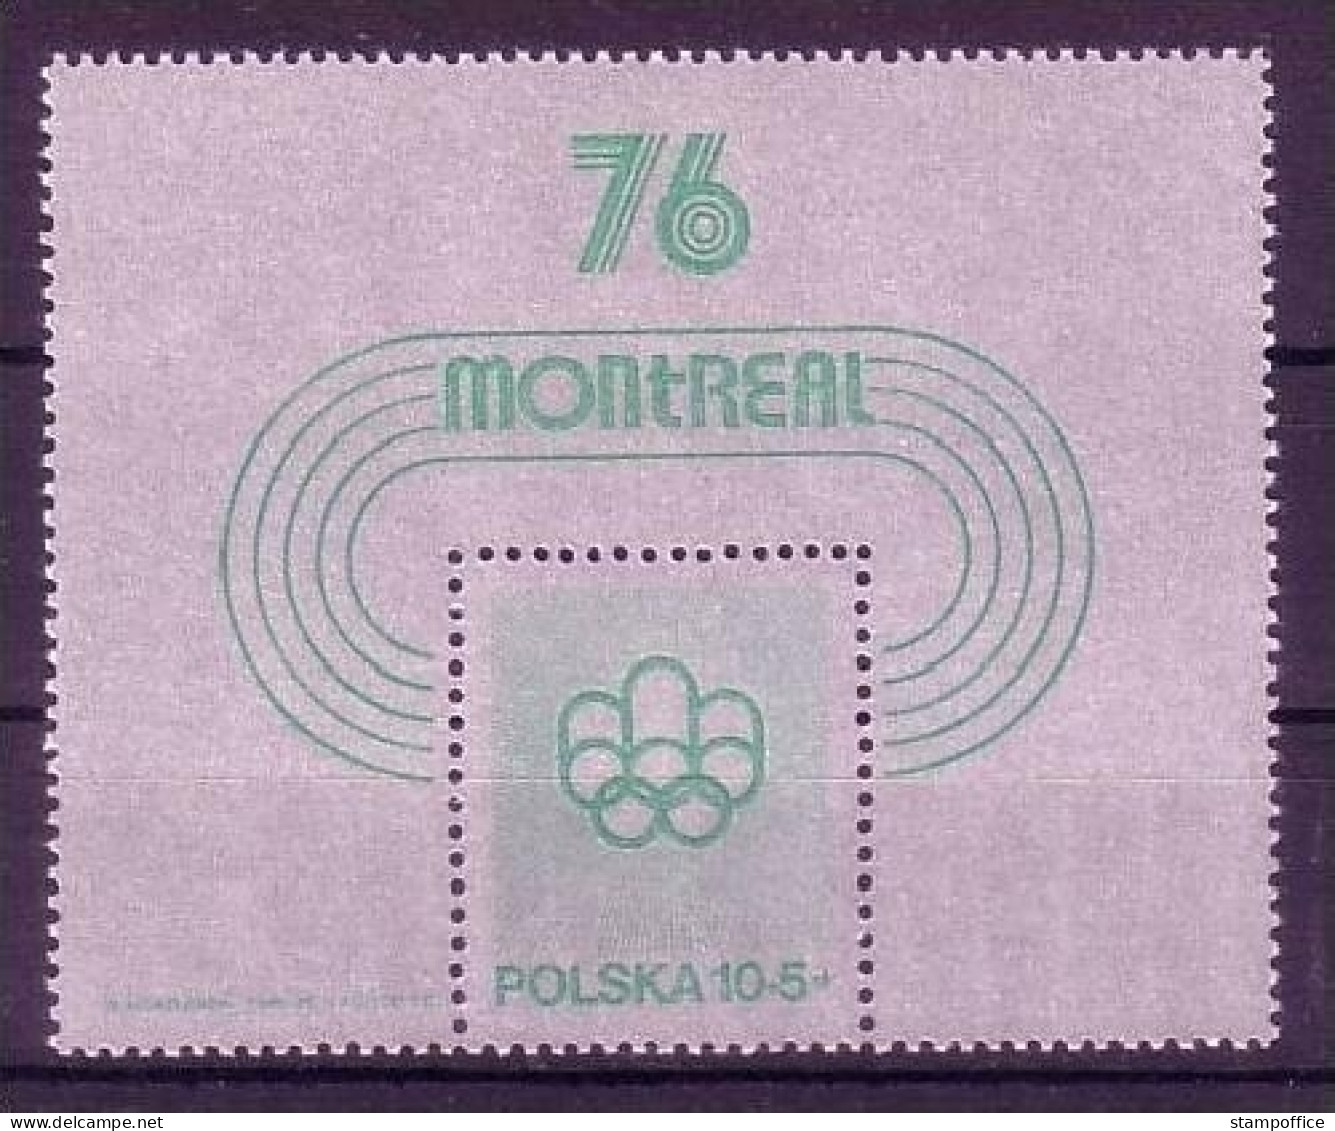 POLEN BLOCK 61 POSTFRISCH(MINT) OLYMPISCHE SOMMERSPIELE MONTREAL 1976 - Ete 1976: Montréal